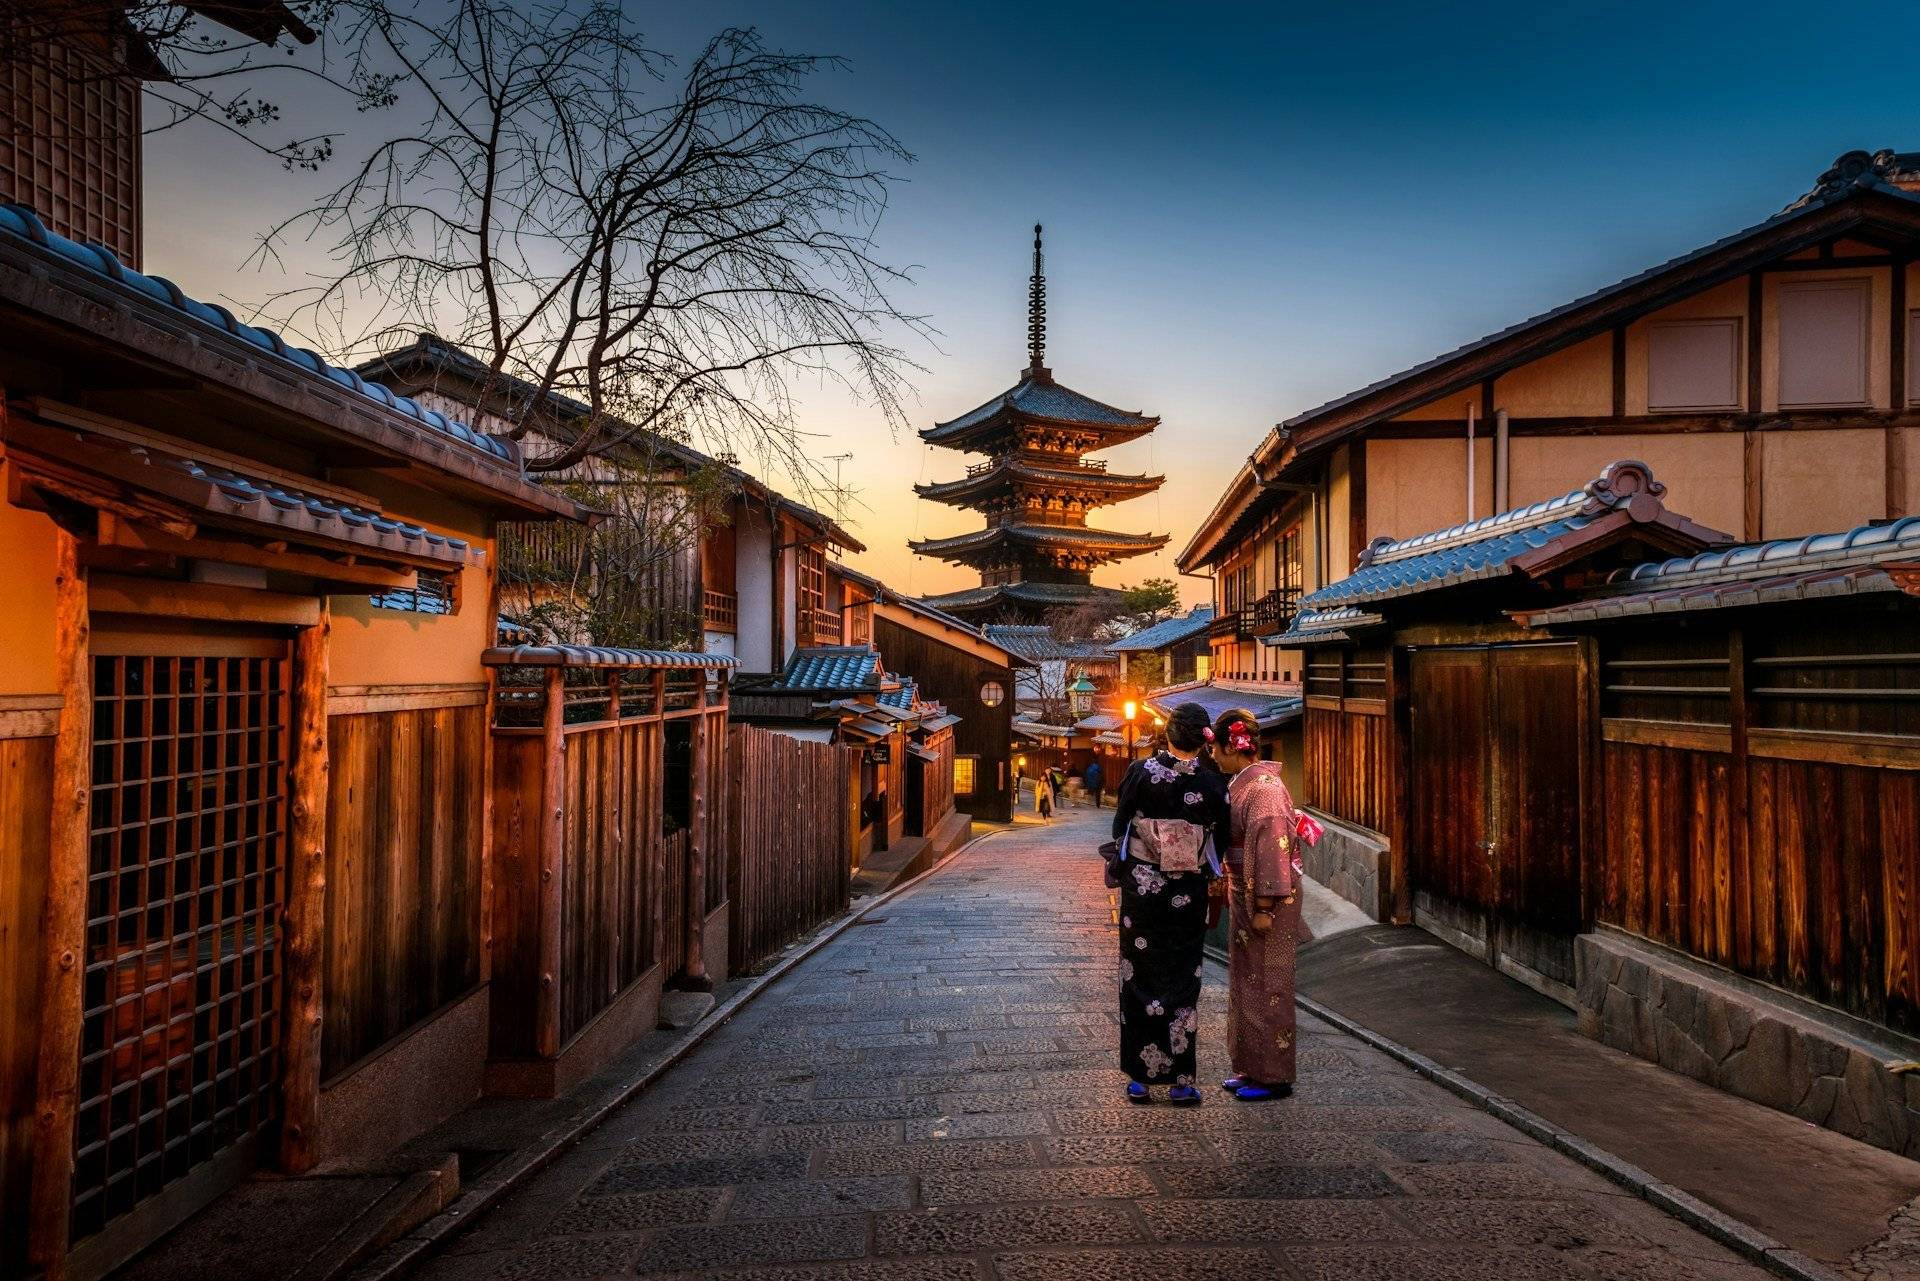 Ankunft in der alten Hauptstadt Kyoto